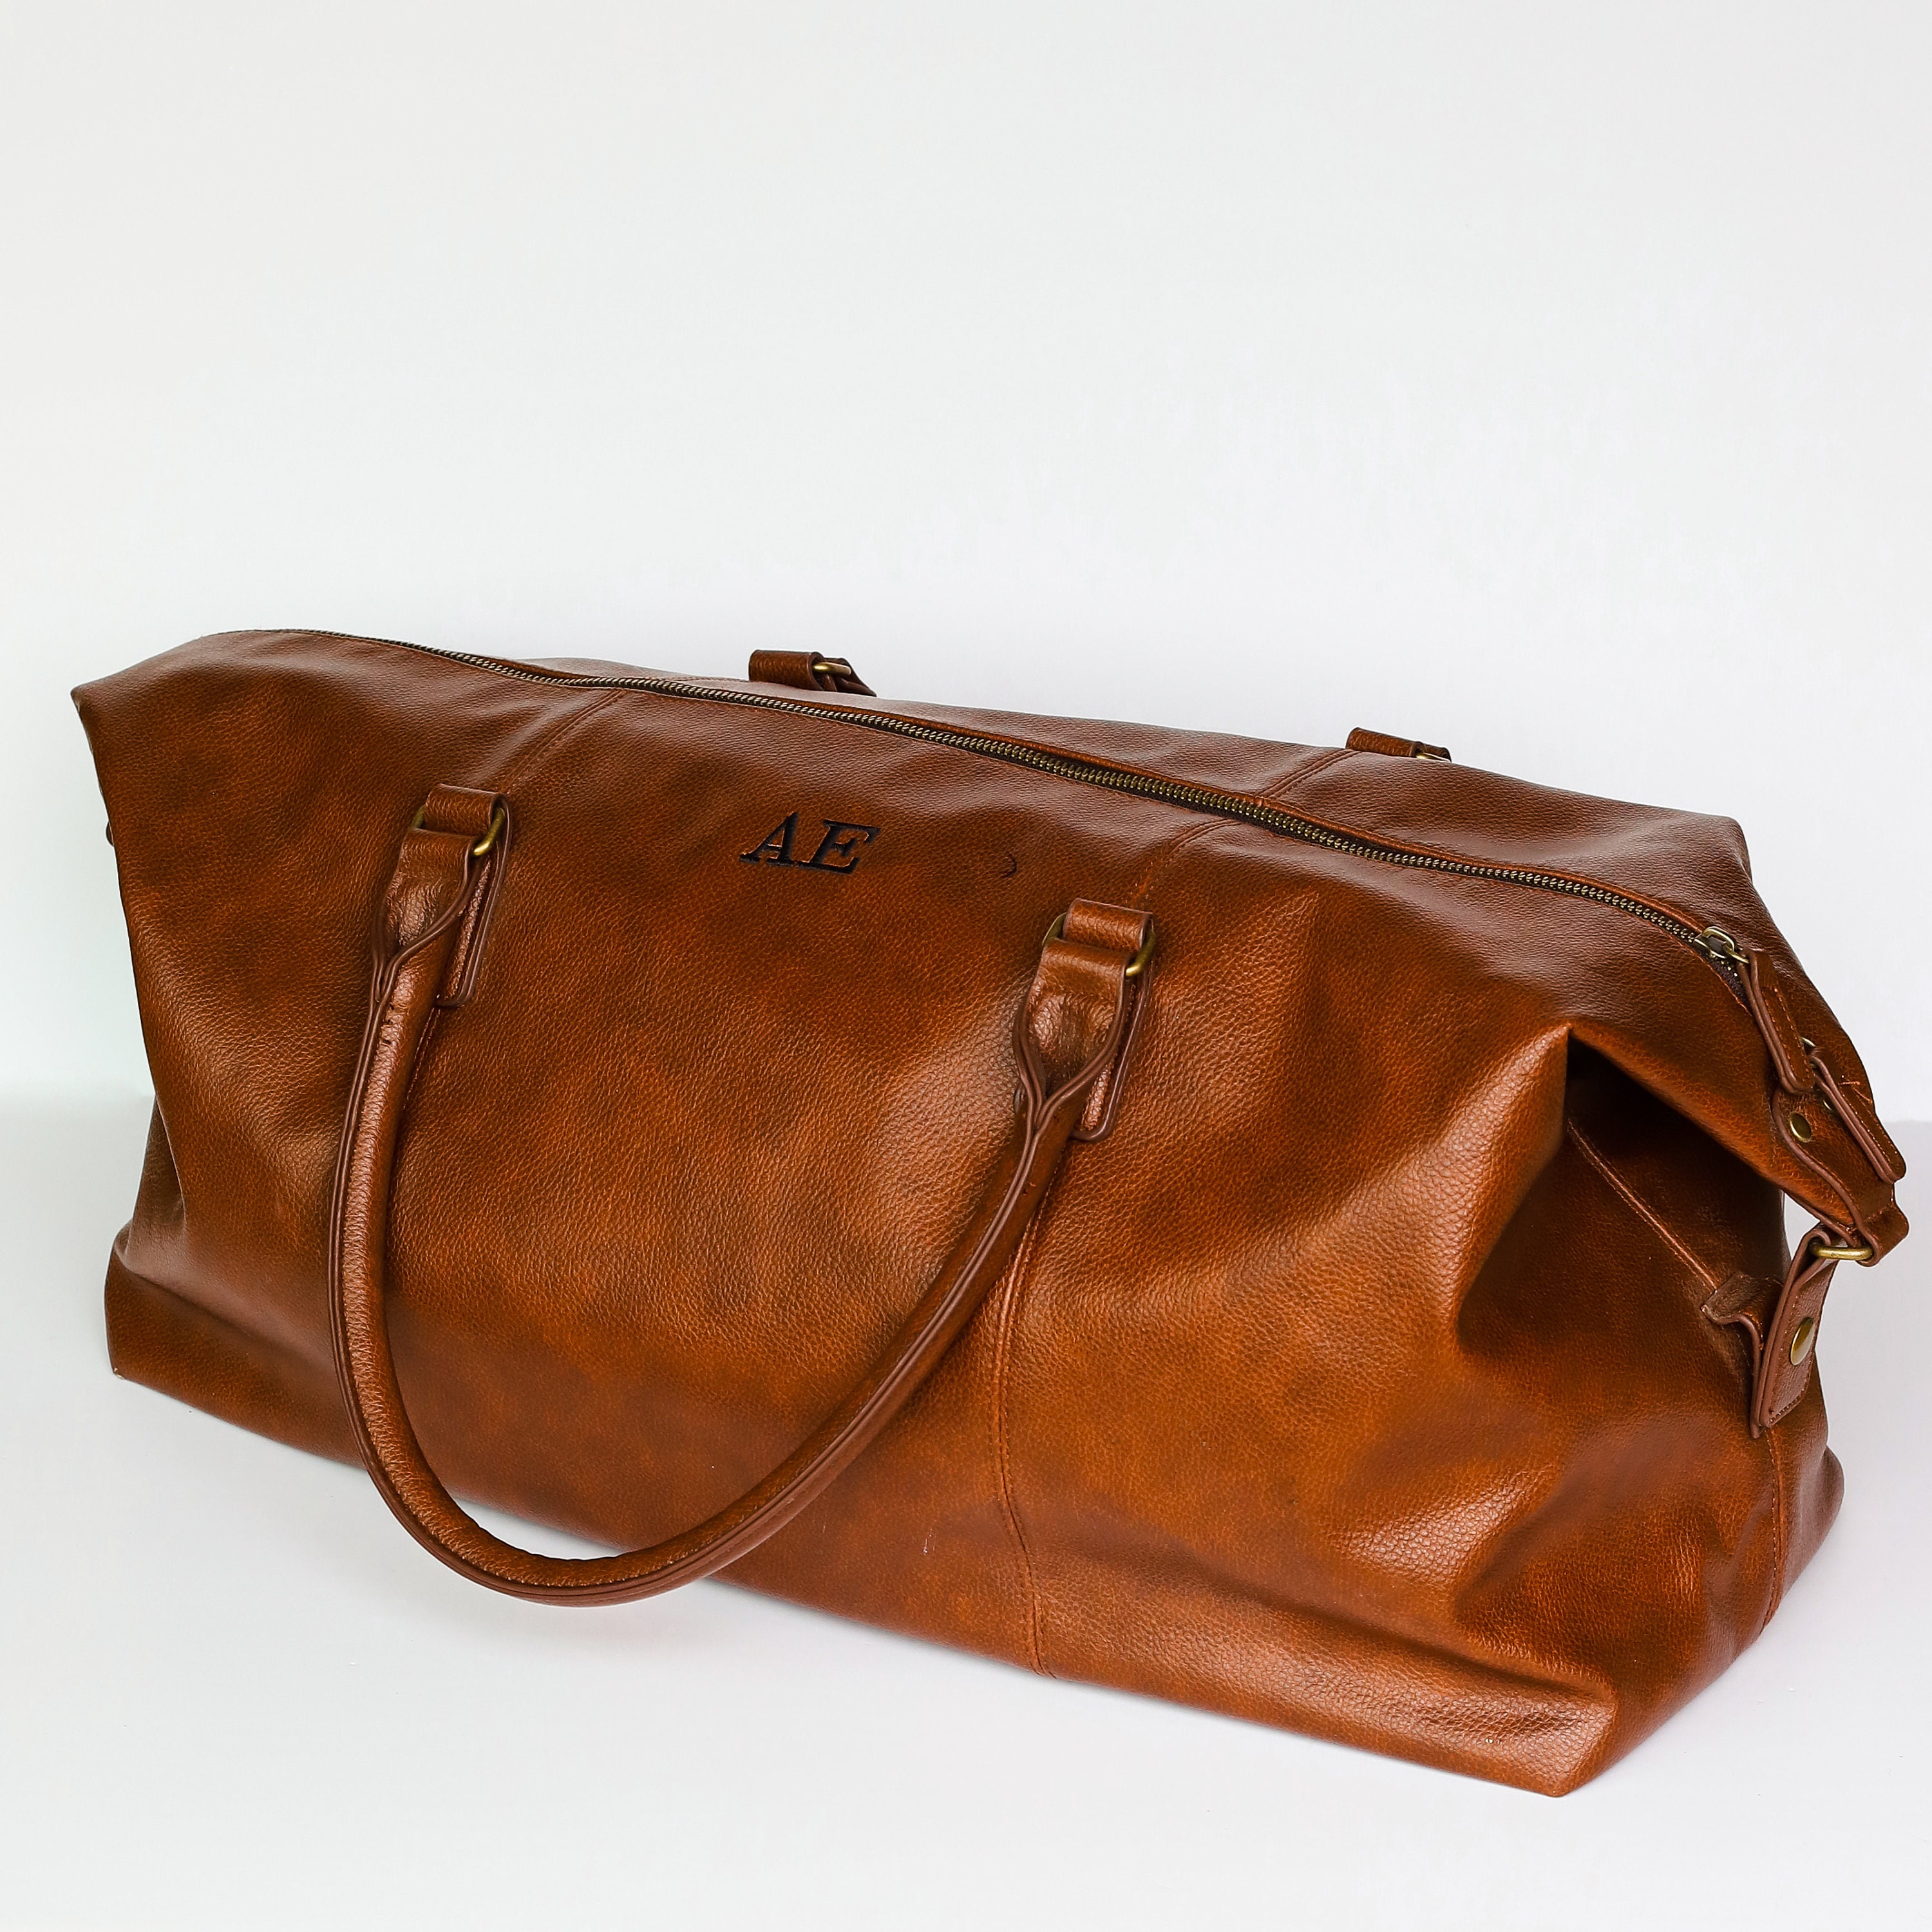 Personalised Travel Bag Travel Bag Gift Idea Faux Leather - Etsy UK